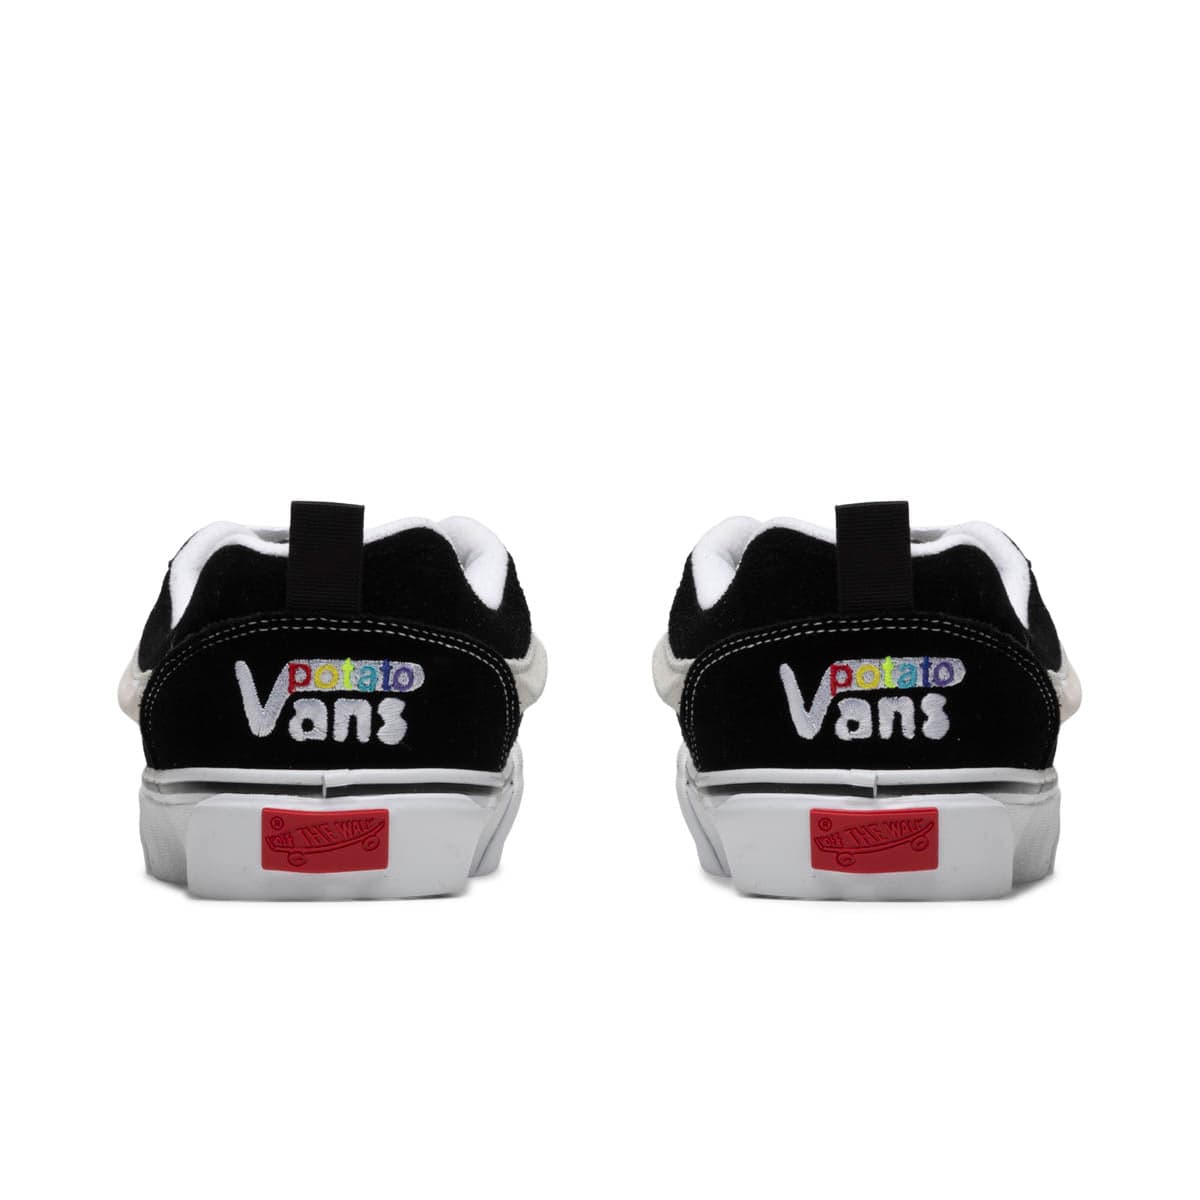 Vault by Vans Sneakers X IMRAN POTATO KNU-SKOOL VR3 LX